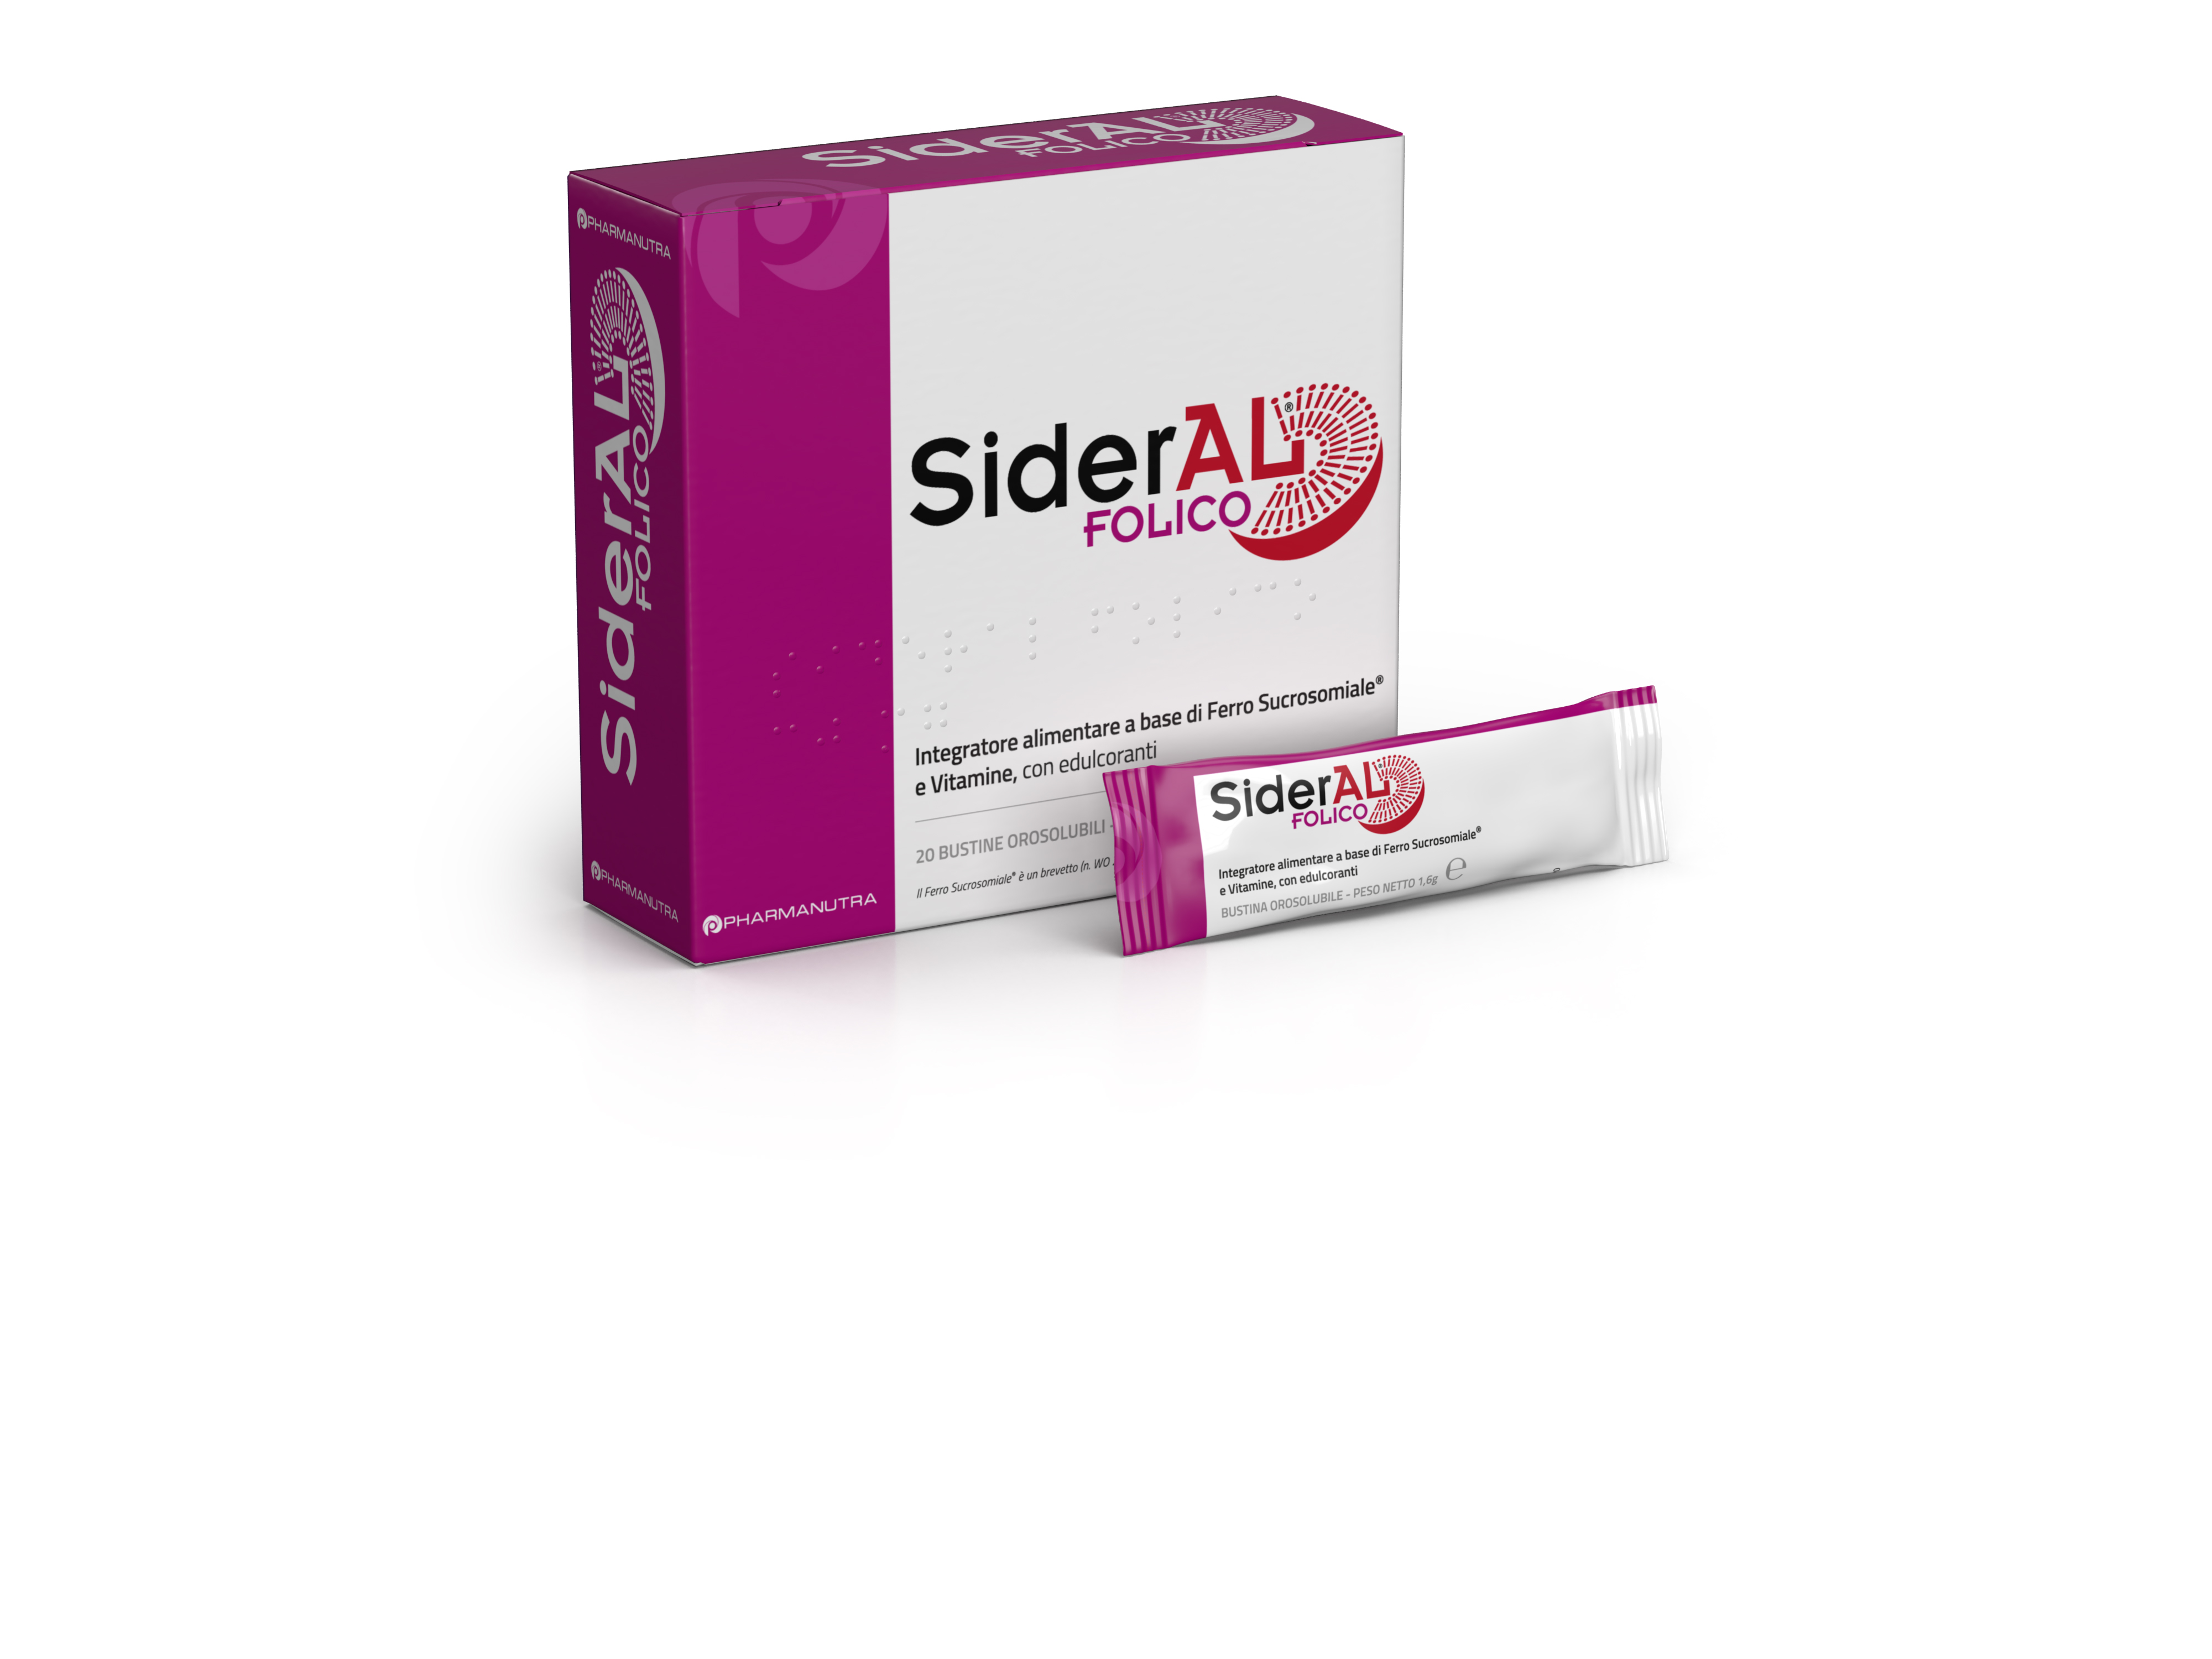 SiderAL Folico, integratore di ferro e vitamine - PharmaNutra Spa